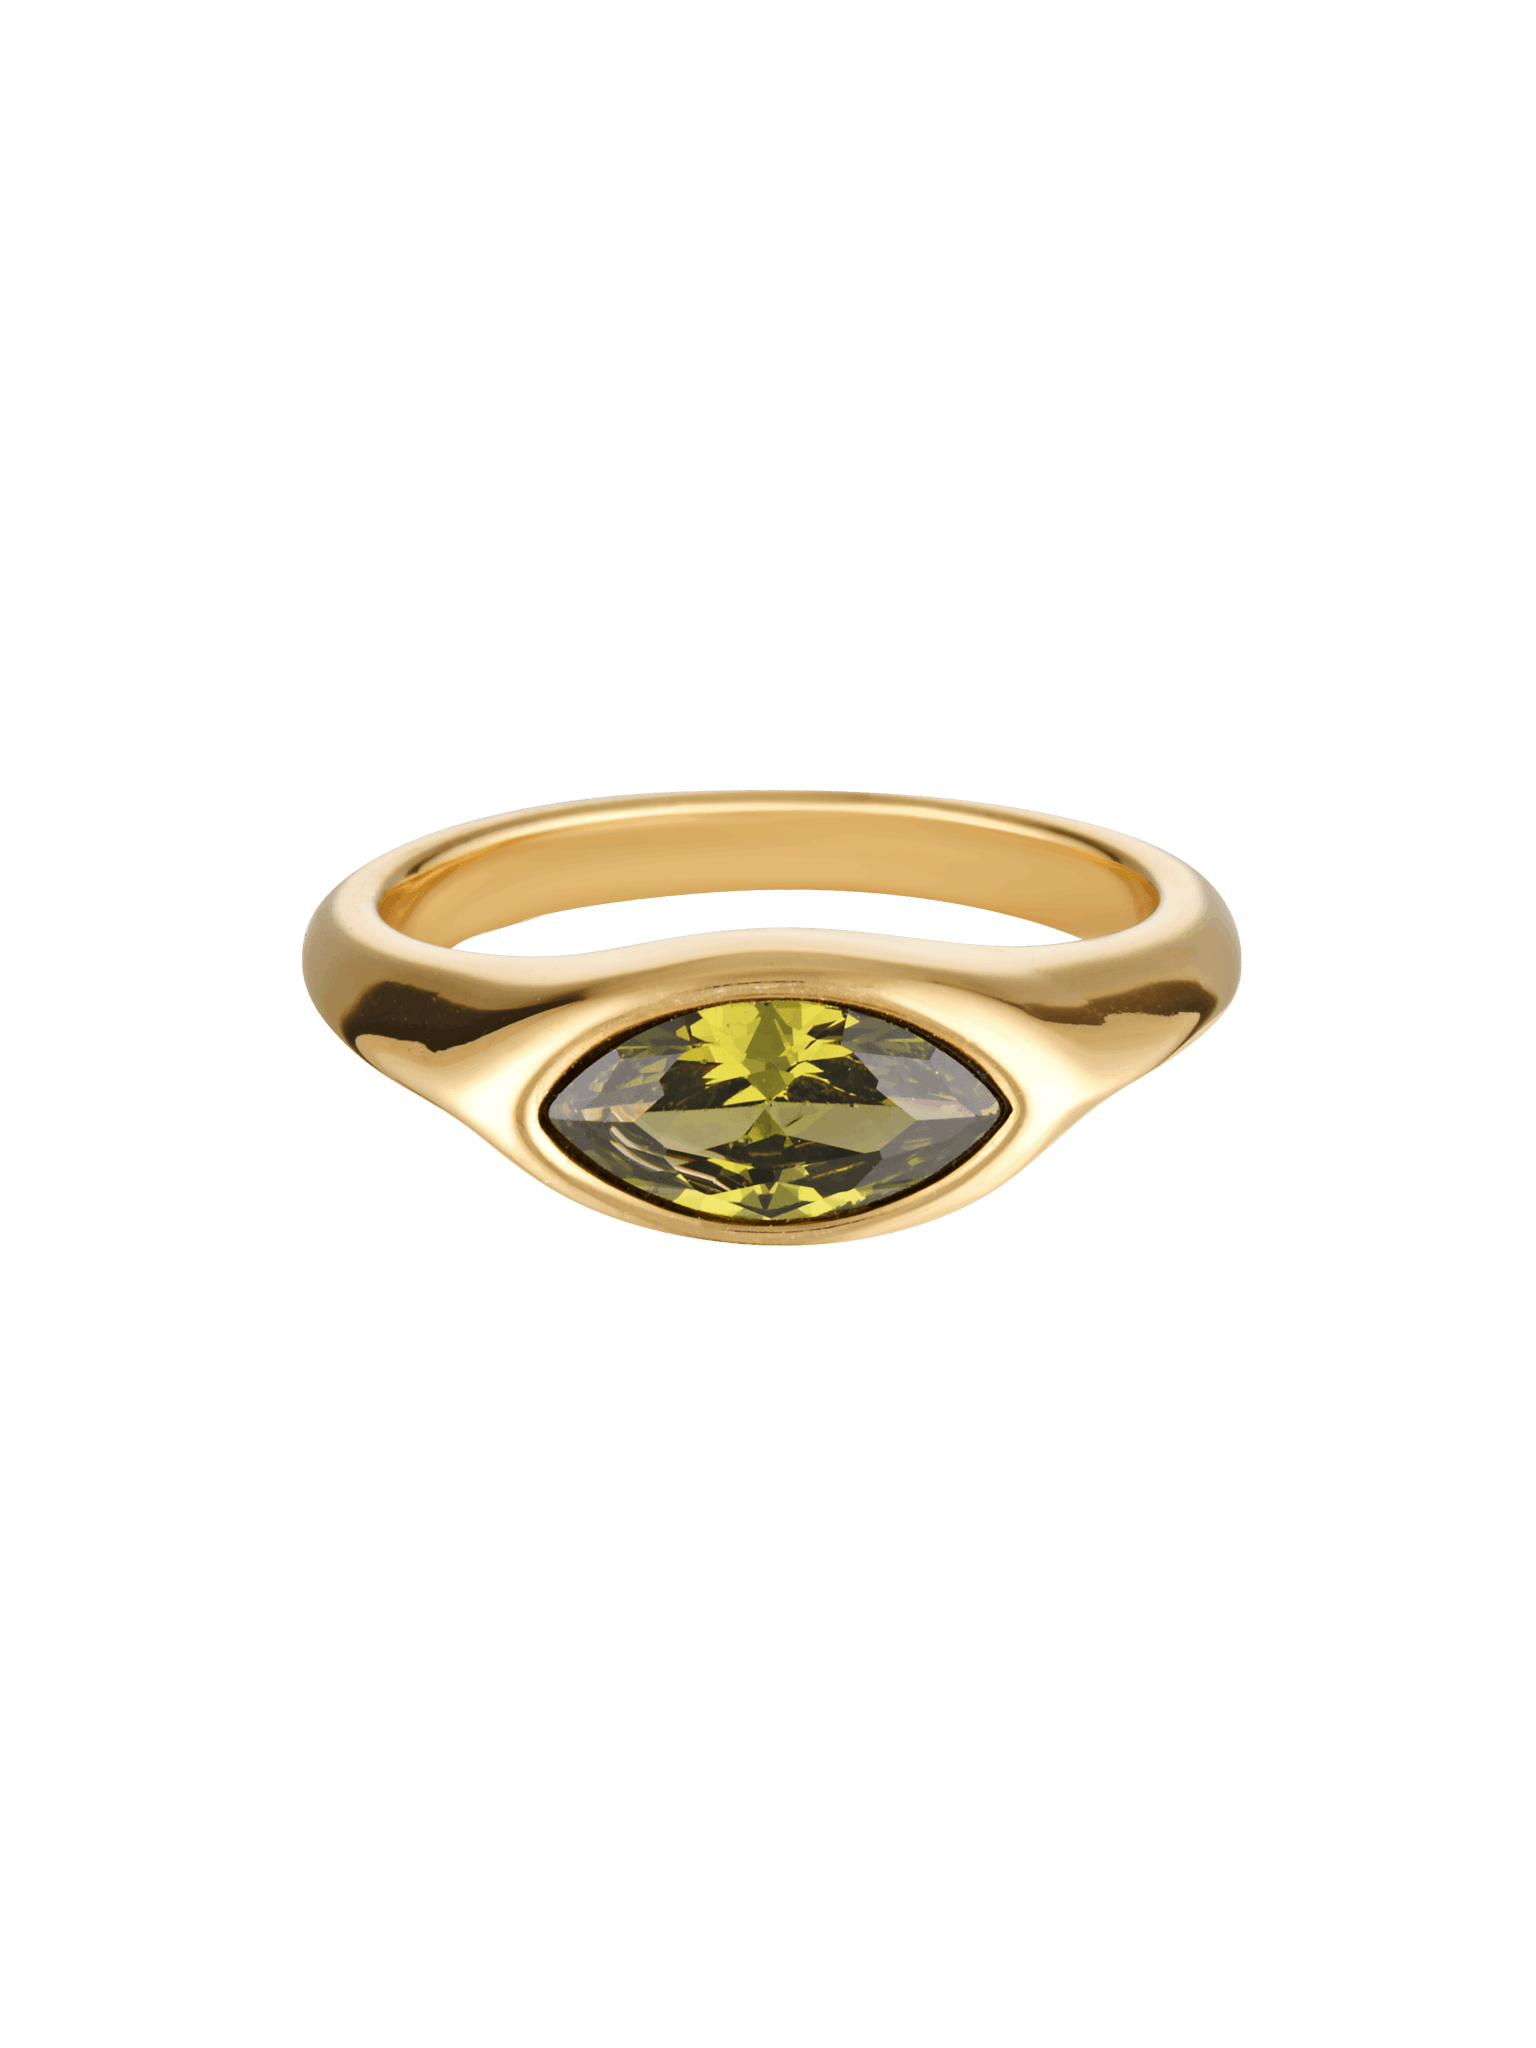 Green gemstone ring in gold